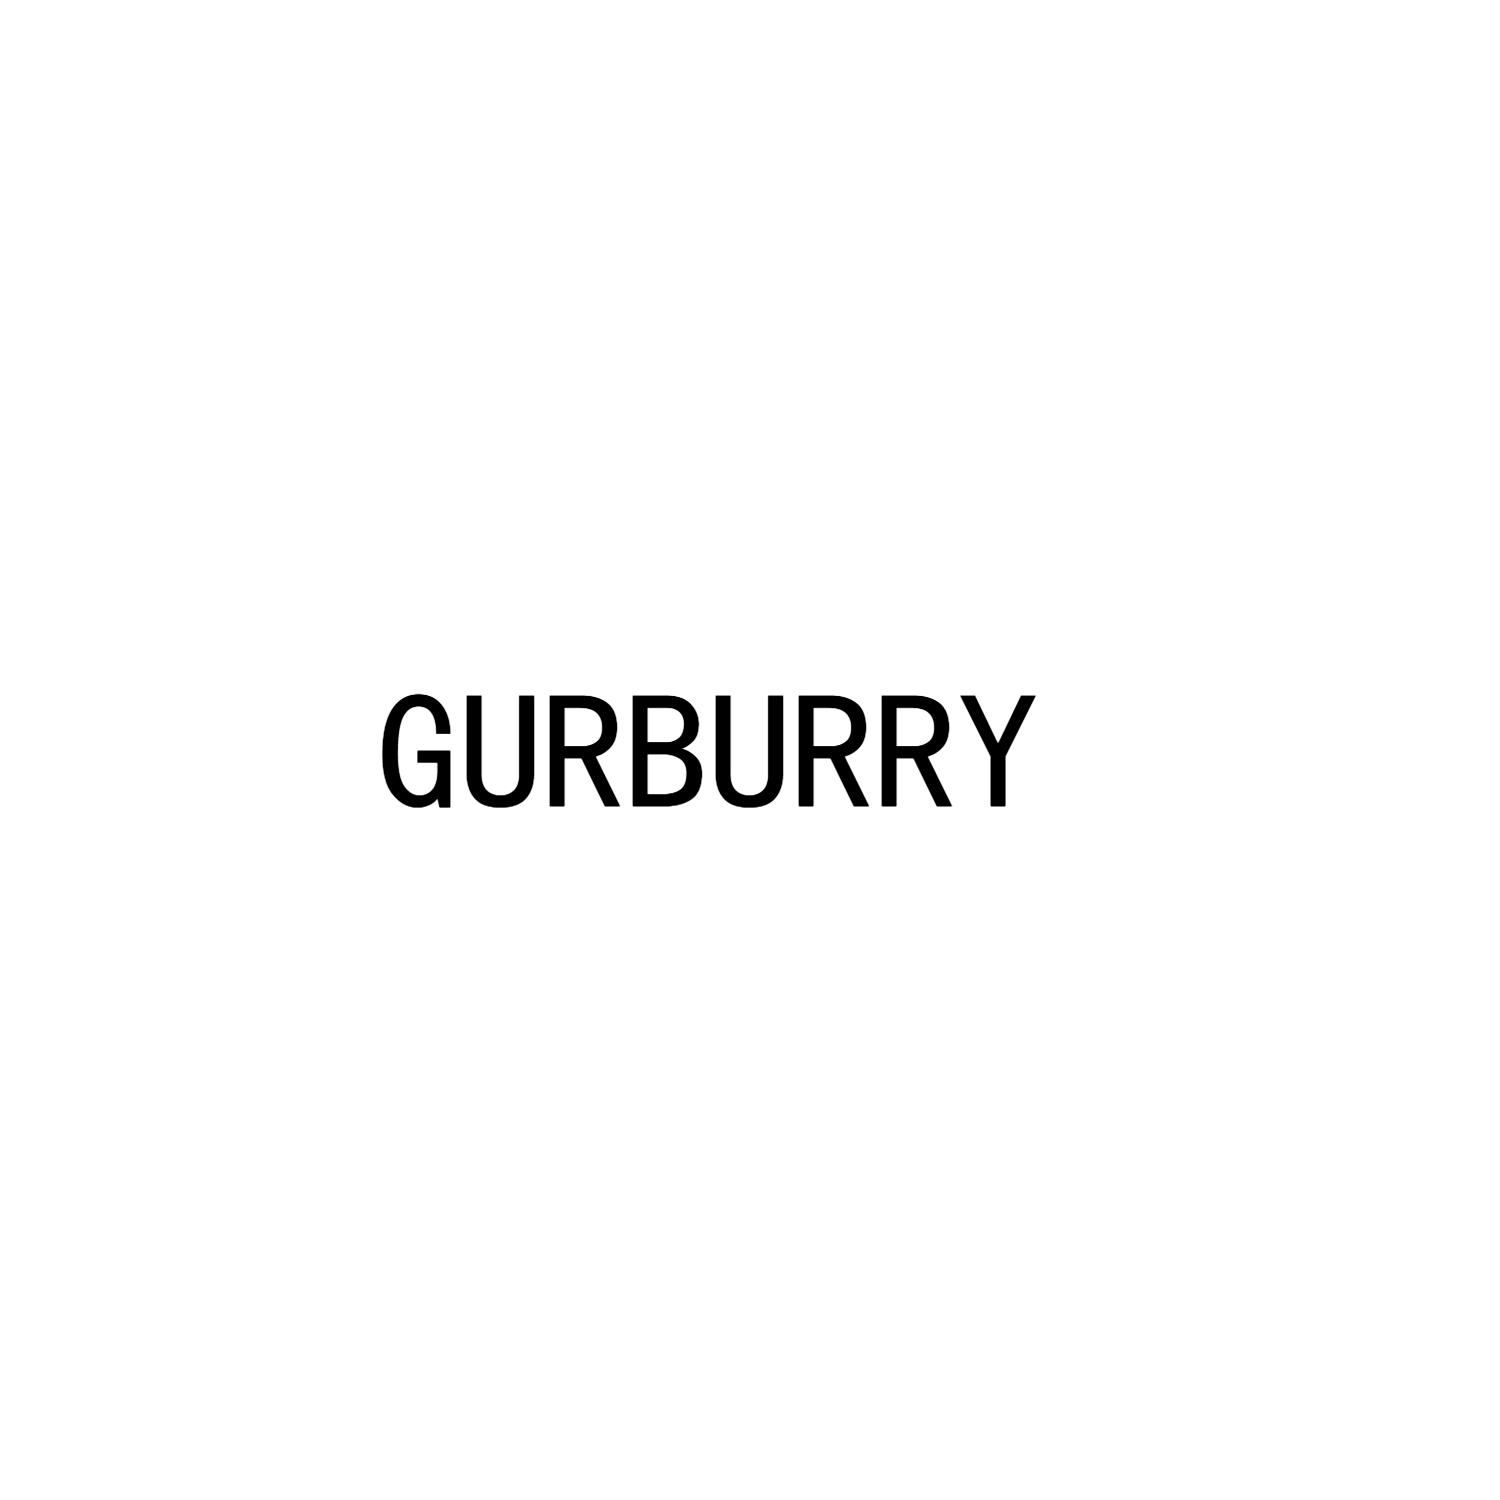 GURBURRY